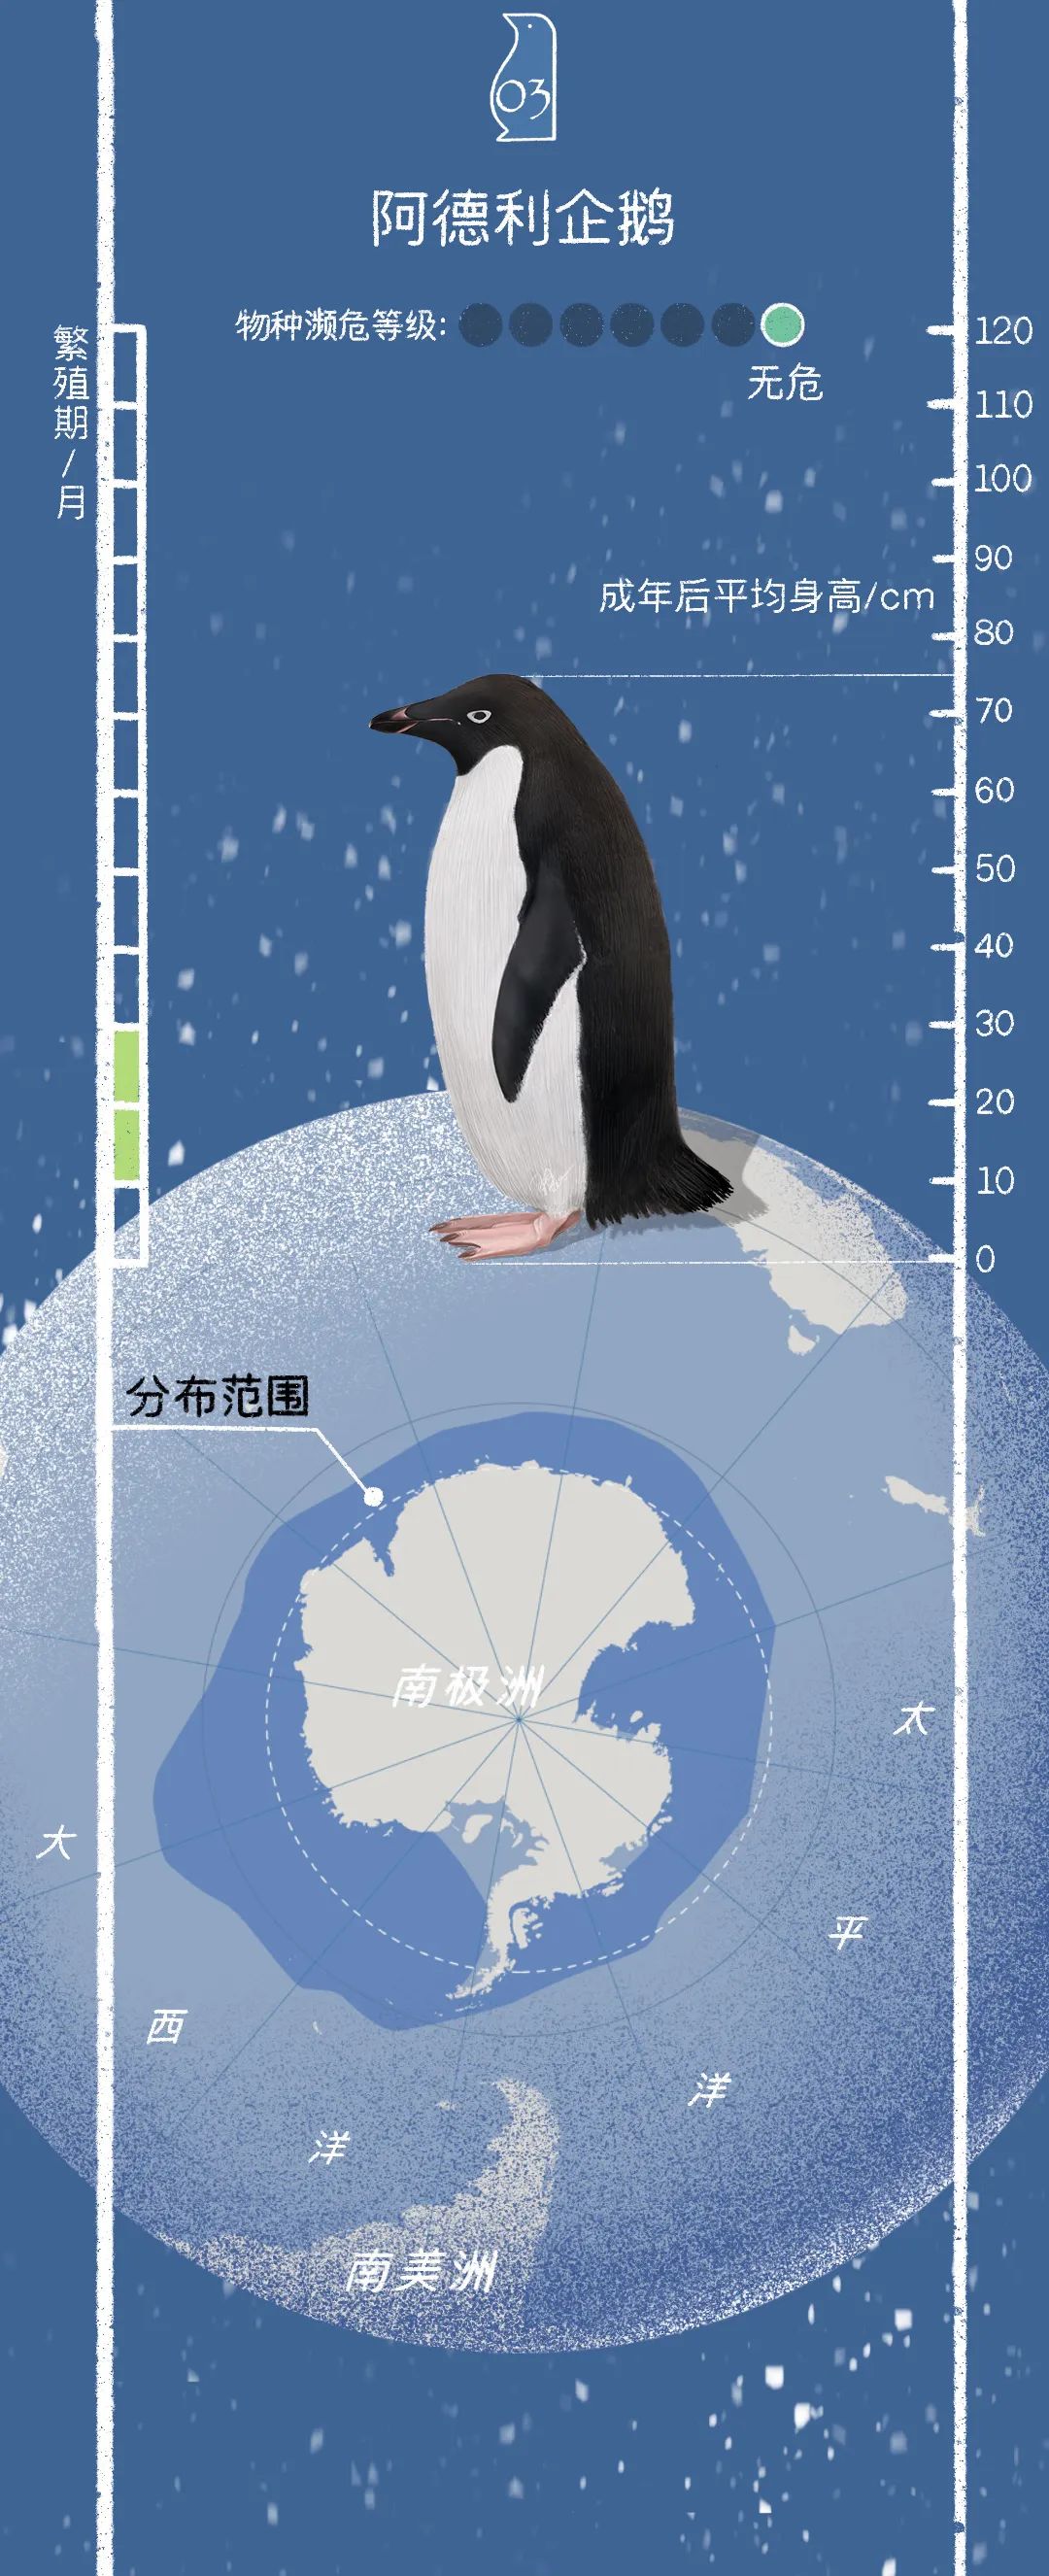 【企鹅的前世今生】早在16世纪地理大发现时期,人们就在新西兰